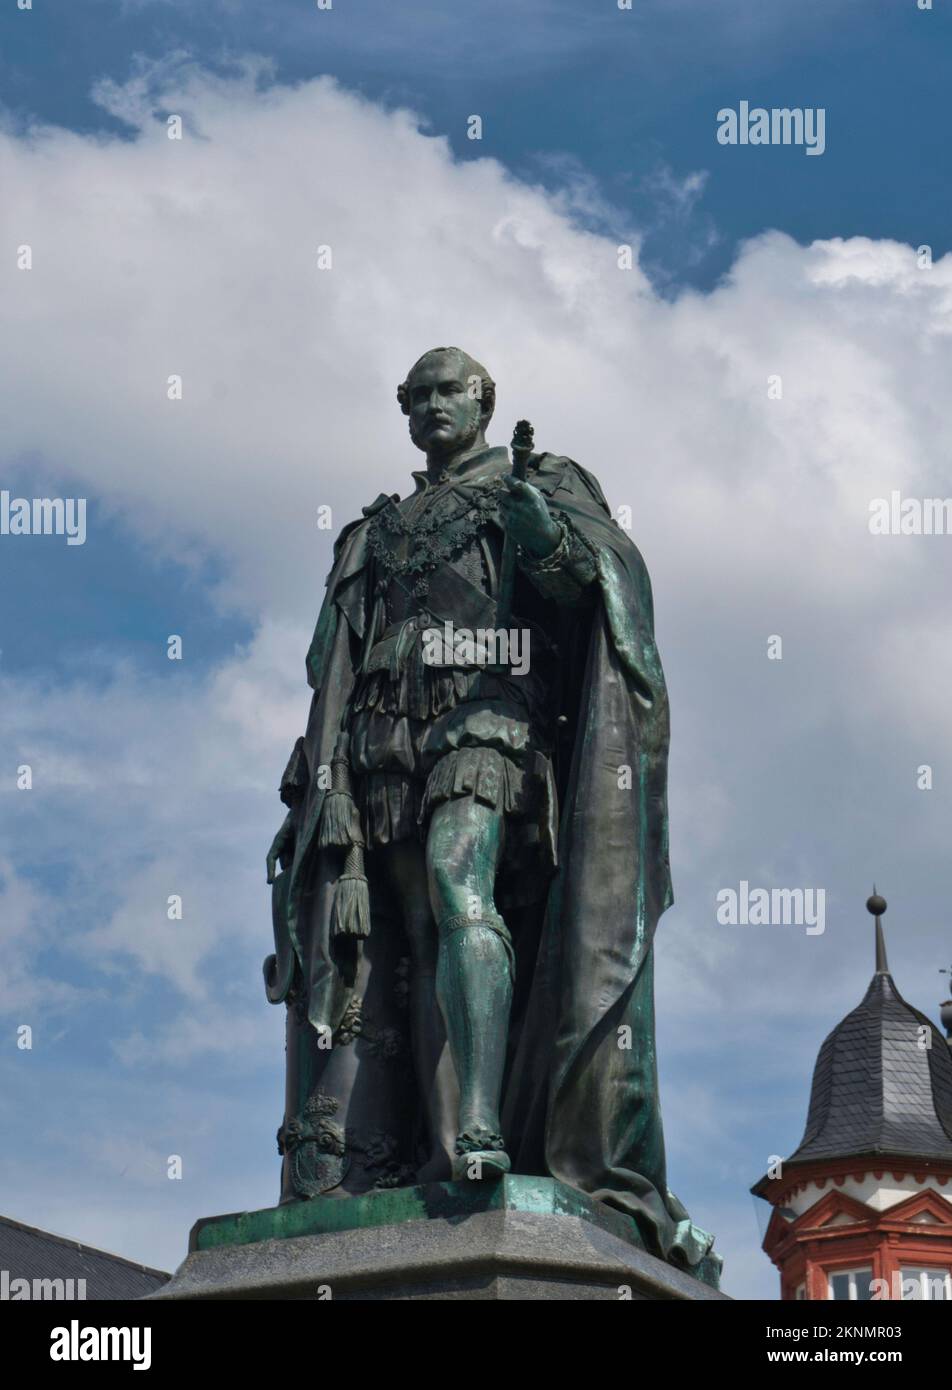 Statua del Principe Alberto nella piazza della città di Coburg, Baviera, Germania Foto Stock